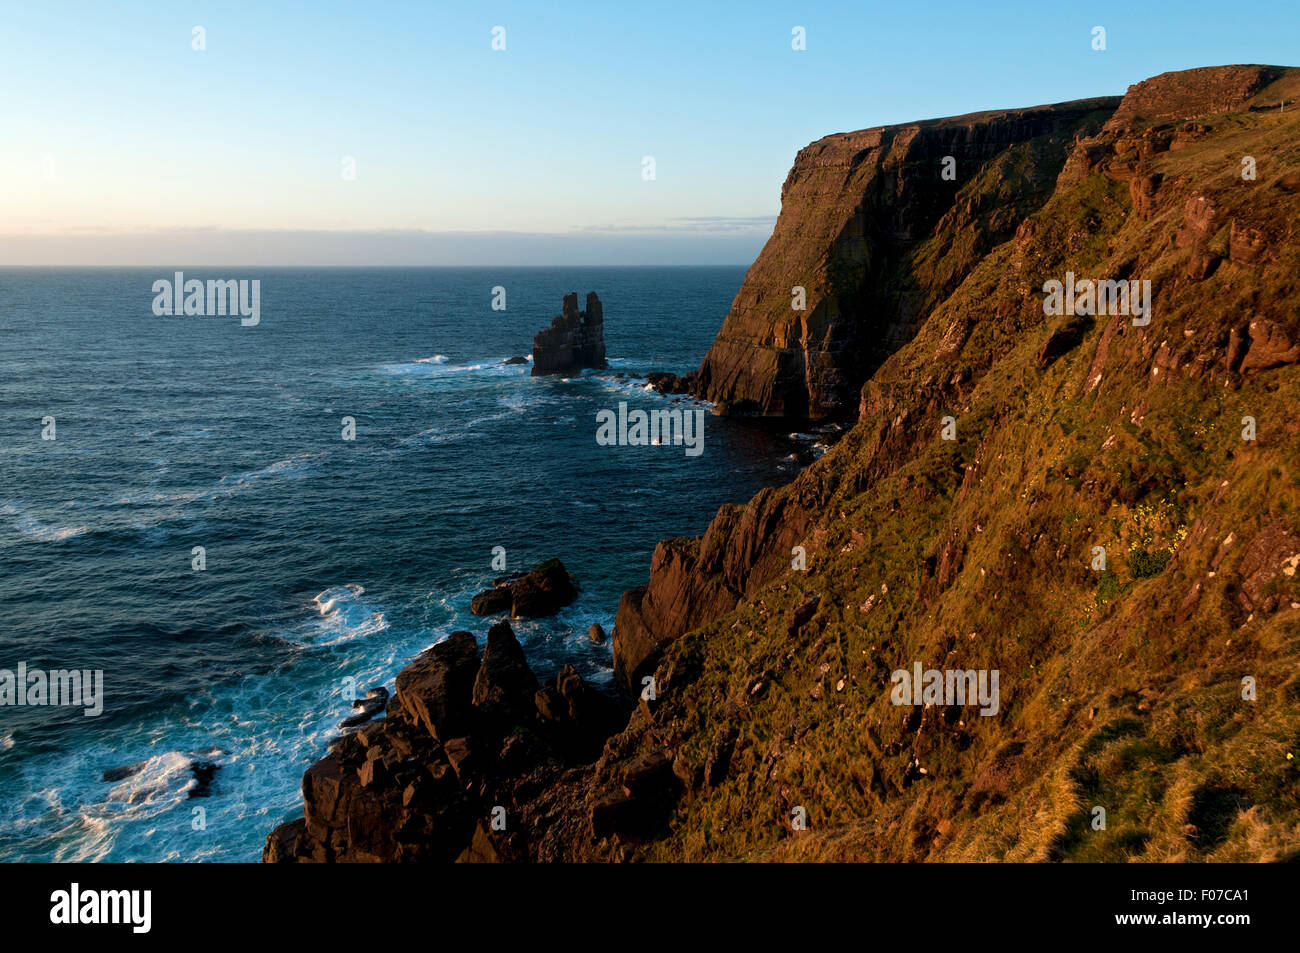 Stapeln Sie Klippen östlich von Kearvaig Bay und Stapel Clò Kearvaig Meer, an der Nordküste östlich von Cape Wrath, Sutherland, Schottland, UK Stockfoto